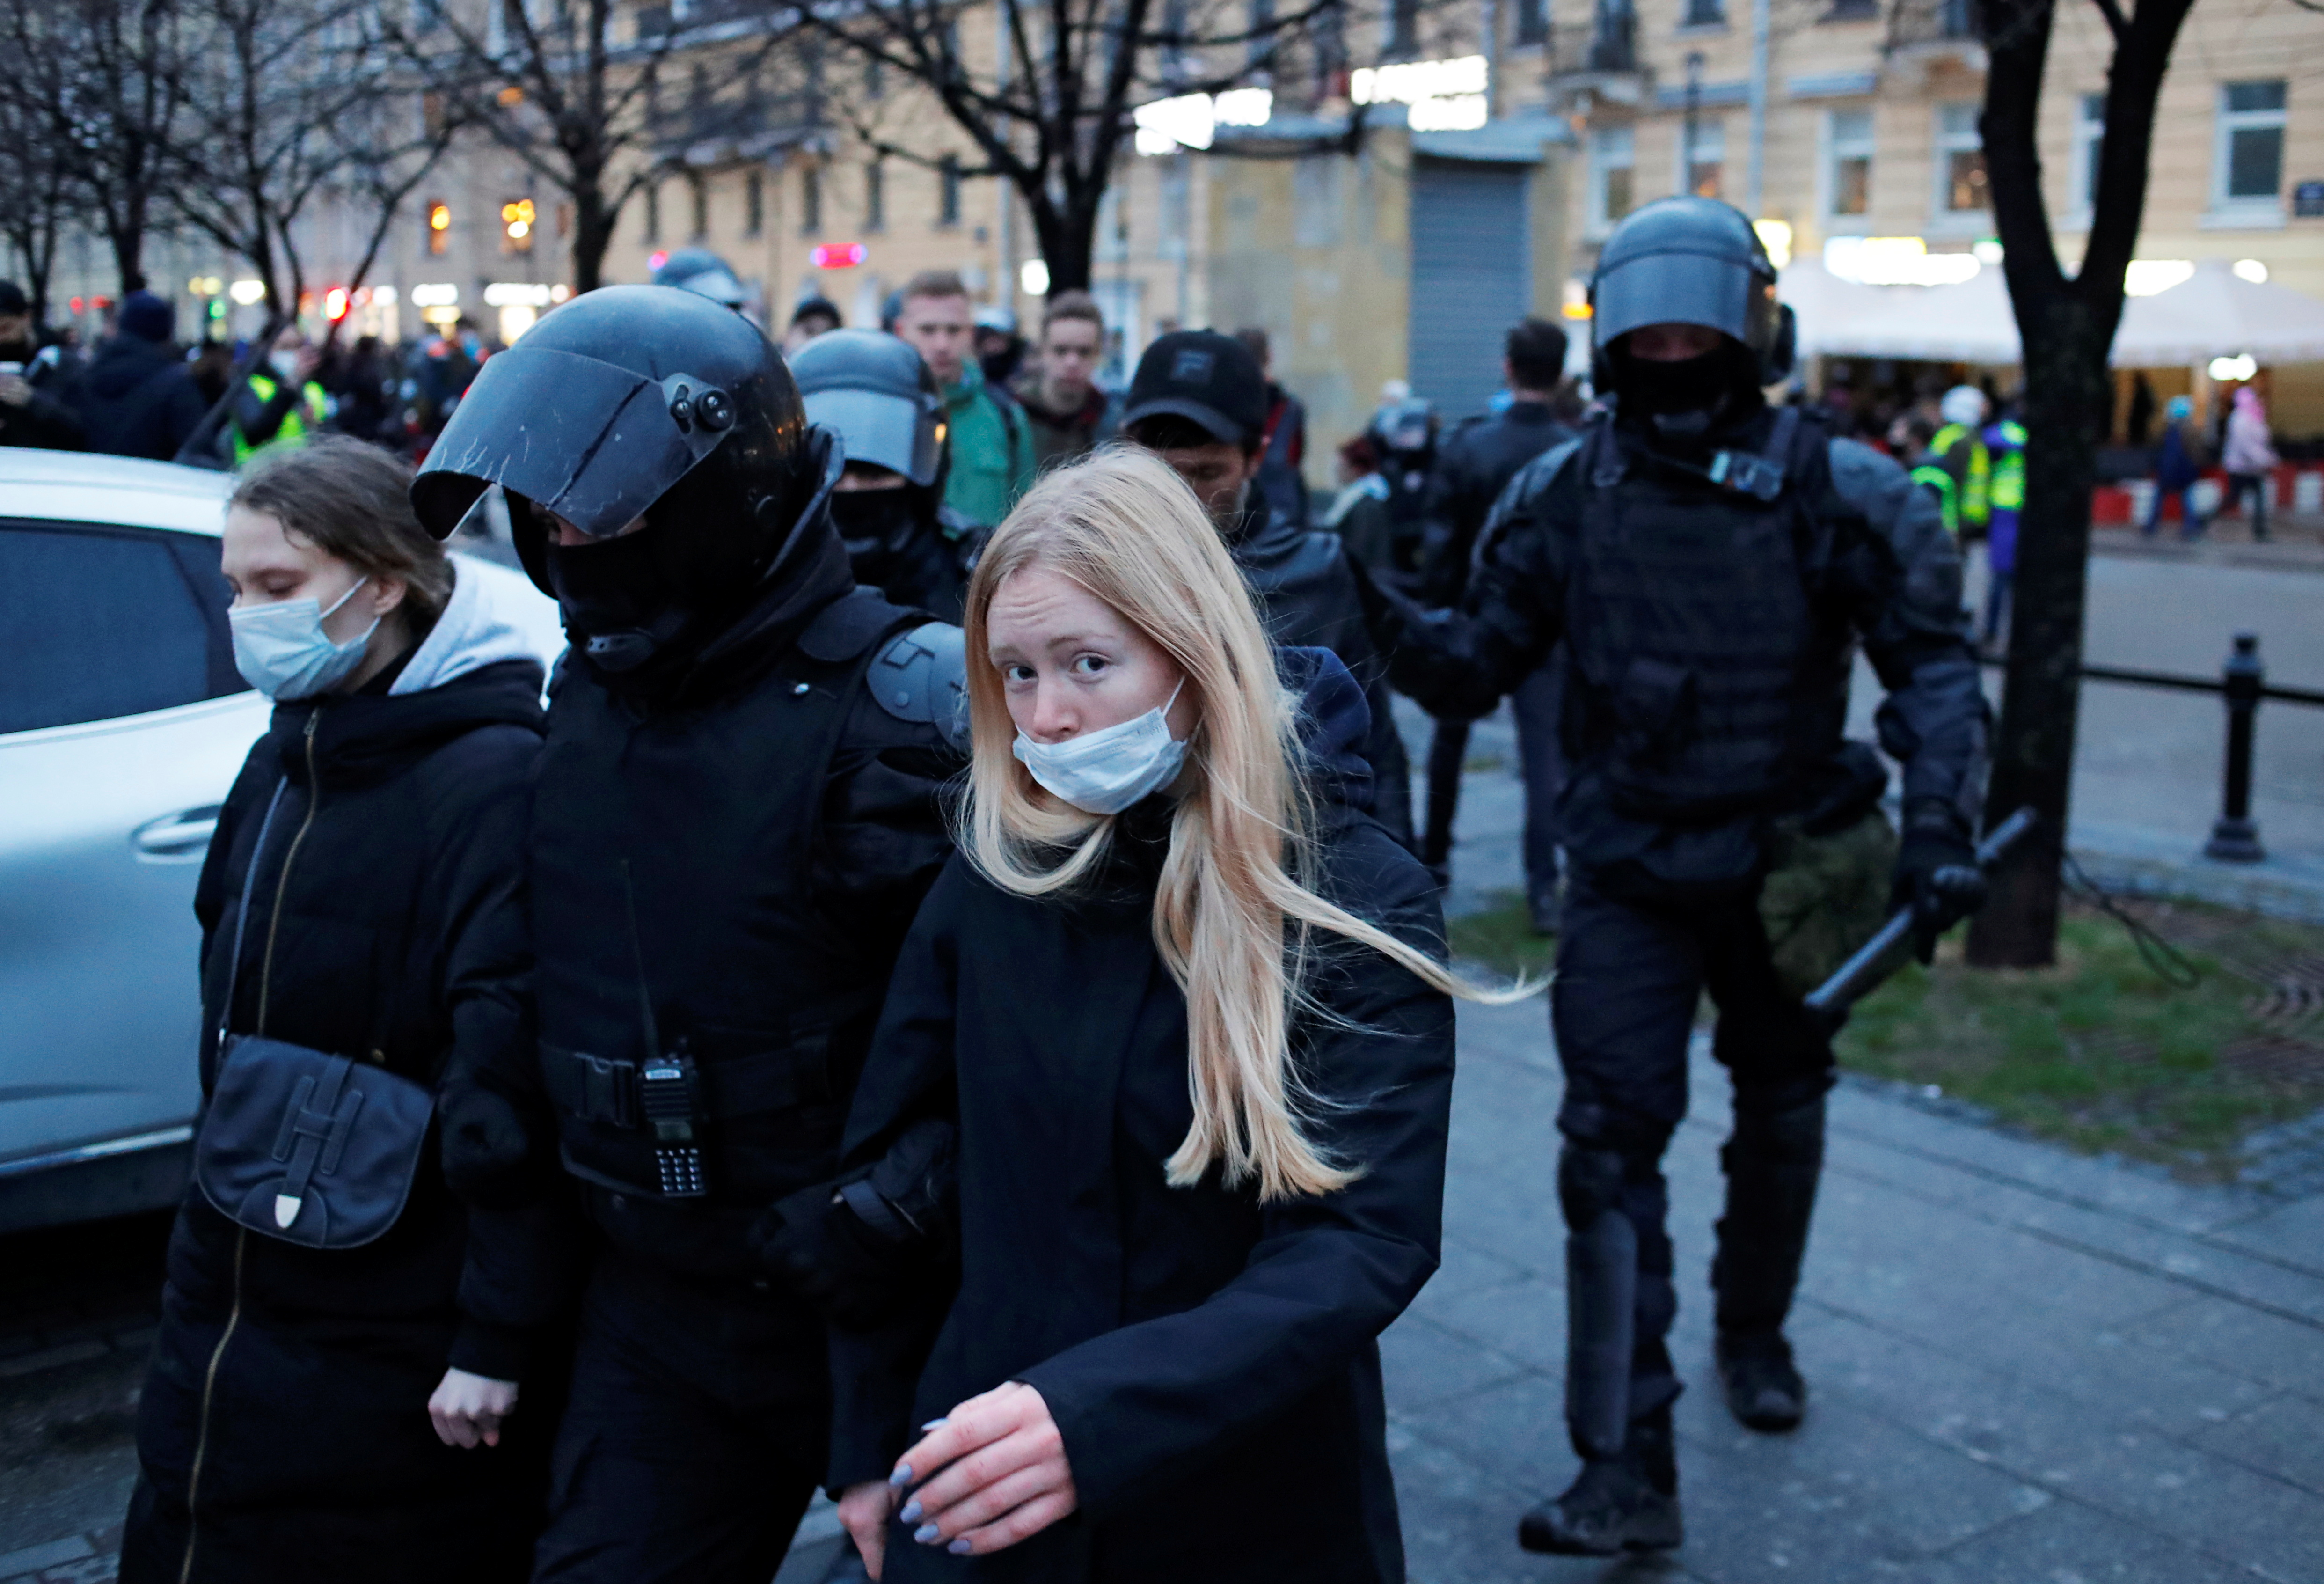 Manifestantes son llevados por agentes del orden durante una manifestación en apoyo al político opositor ruso encarcelado Alexei Navalny en San Petersburgo, Rusia, el 21 de abril de 2021. REUTERS / Anton Vaganov